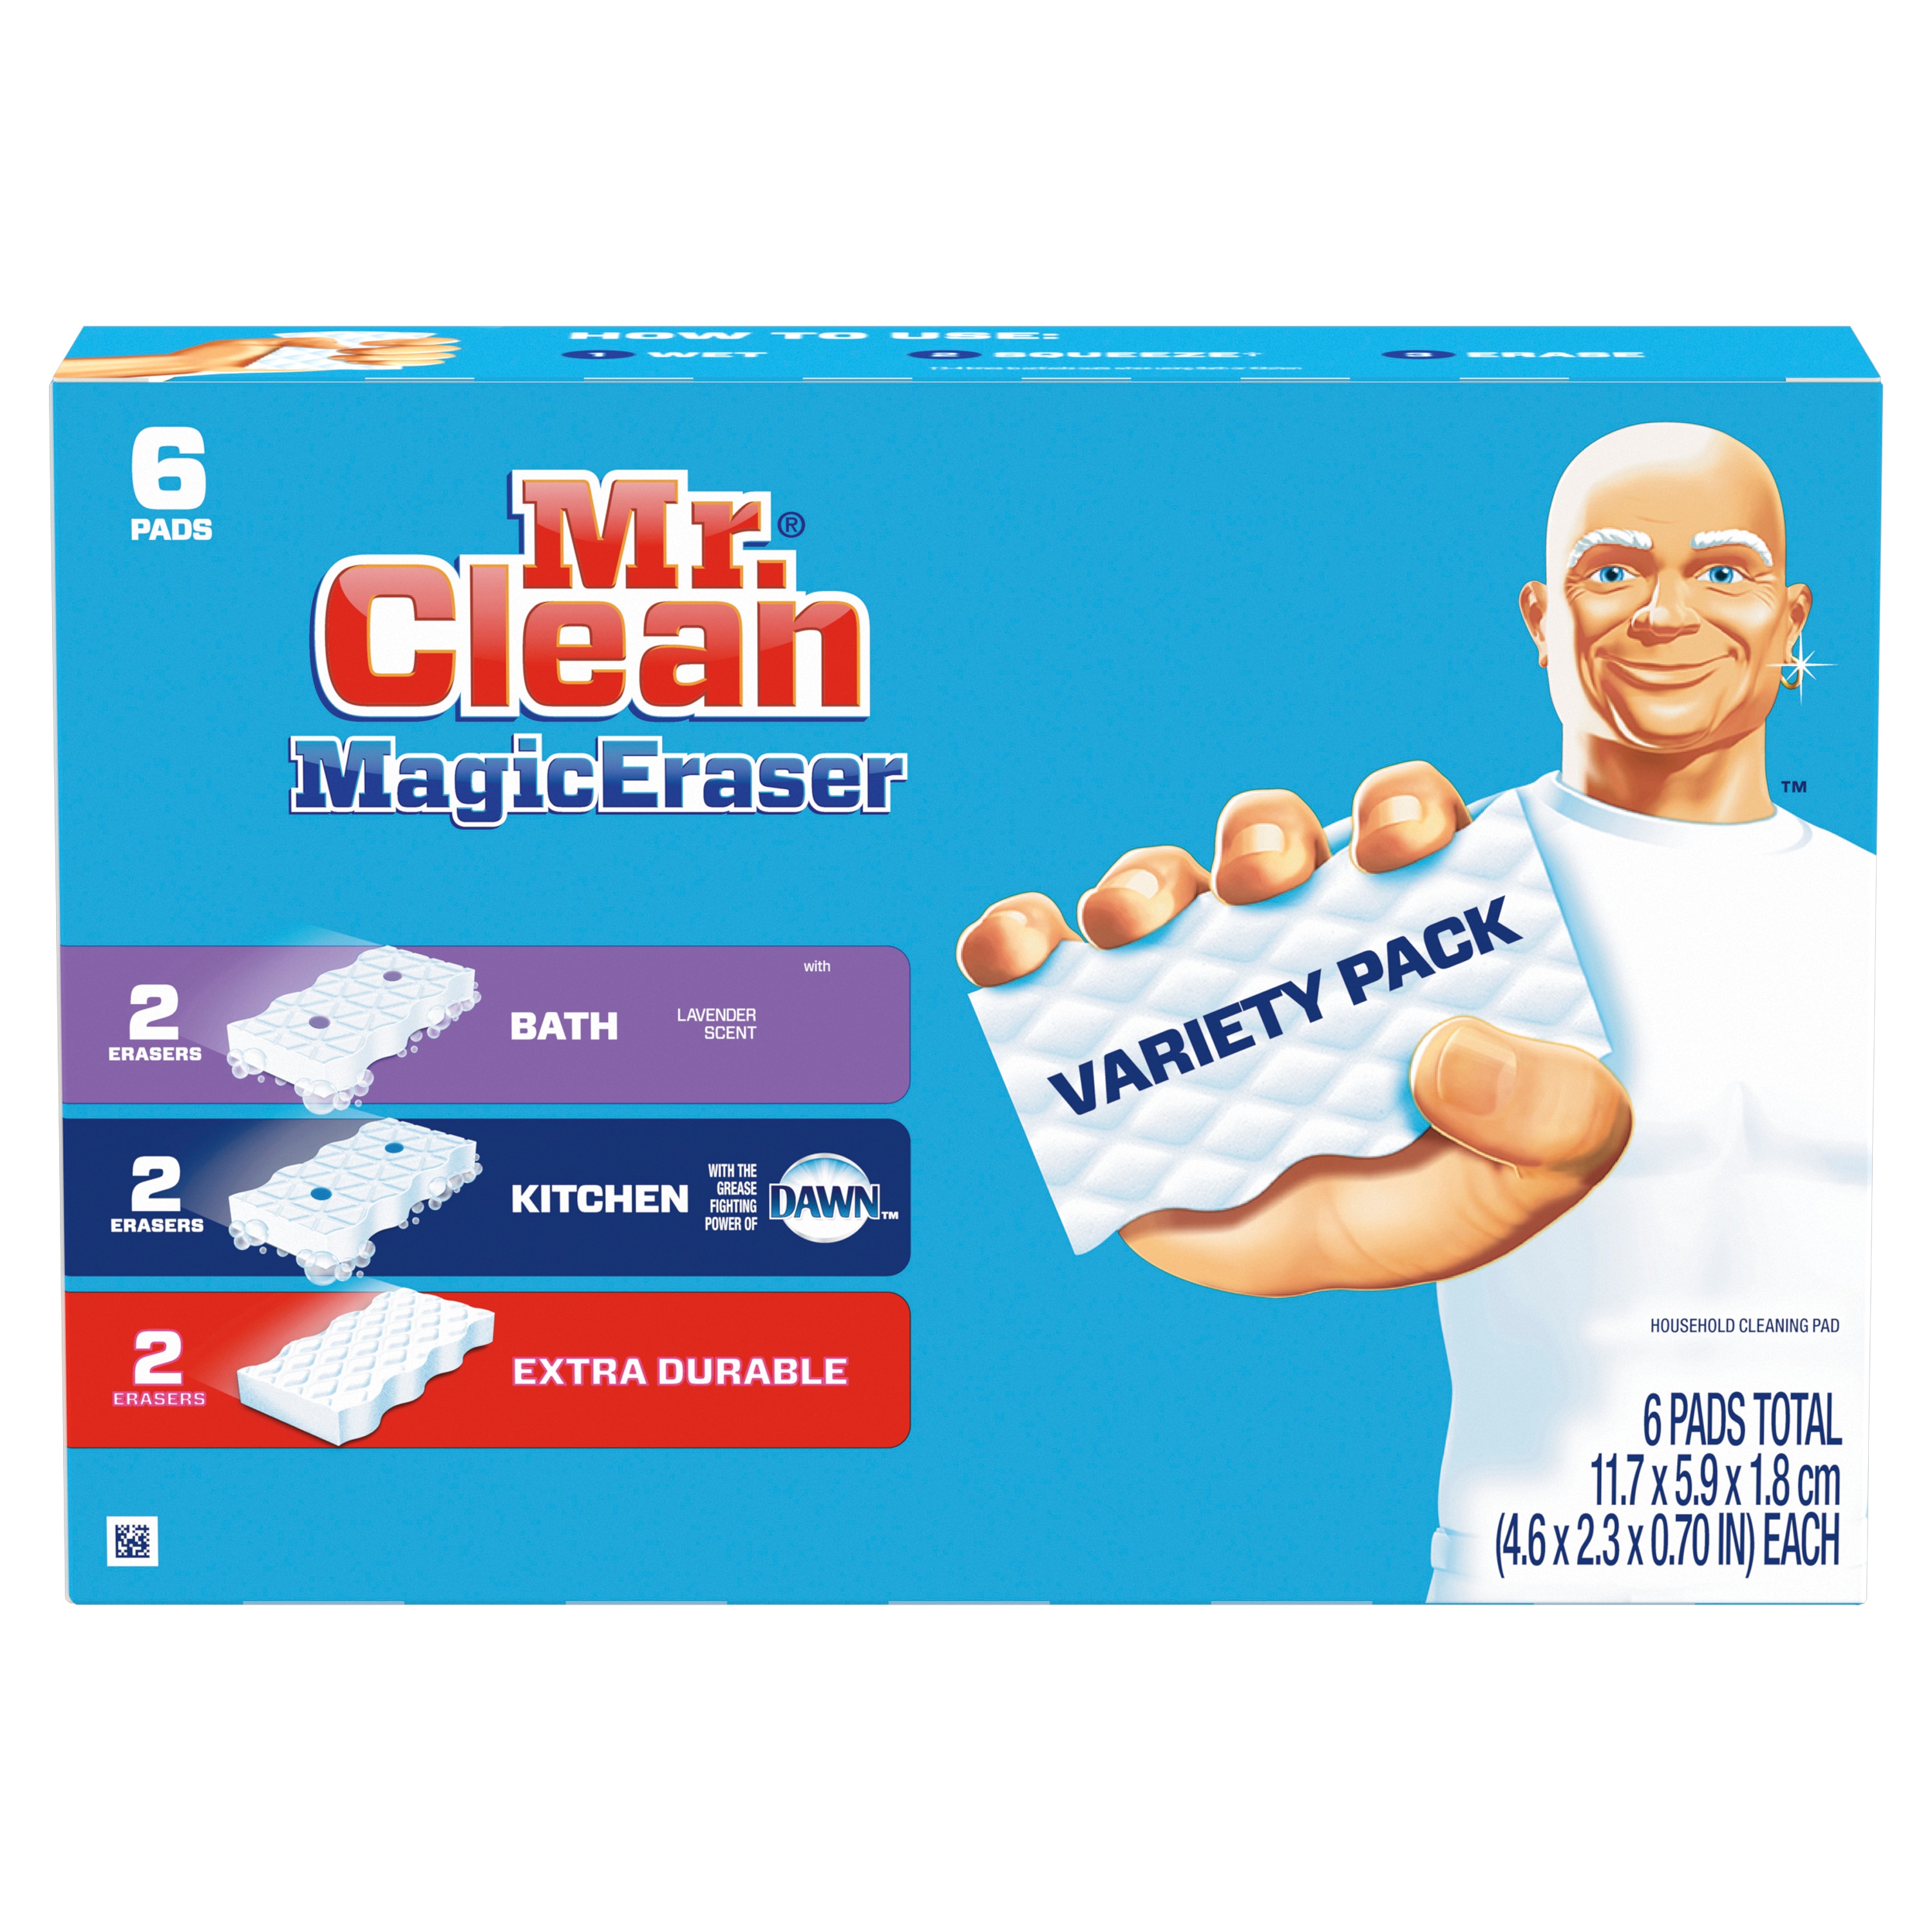 Với bộ đa dạng tấm lau sạch Mr. Clean Magic Eraser 6 miếng, bạn sẽ không còn phải lo lắng về các vết bẩn, xước hay trầy trên các bề mặt quanh nhà. Bộ sản phẩm này gồm 6 tấm lau sạch, bao gồm các sản phẩm chuyên dụng cho phòng tắm, phòng bếp và các khu vực khác trong nhà. Với chất liệu đặc biệt và thiết kế tiện lợi, bạn sẽ không còn phải lo lắng về việc vệ sinh nữa. Hãy xem ảnh để hiểu rõ hơn về sự tiện lợi và hiệu quả của sản phẩm này!